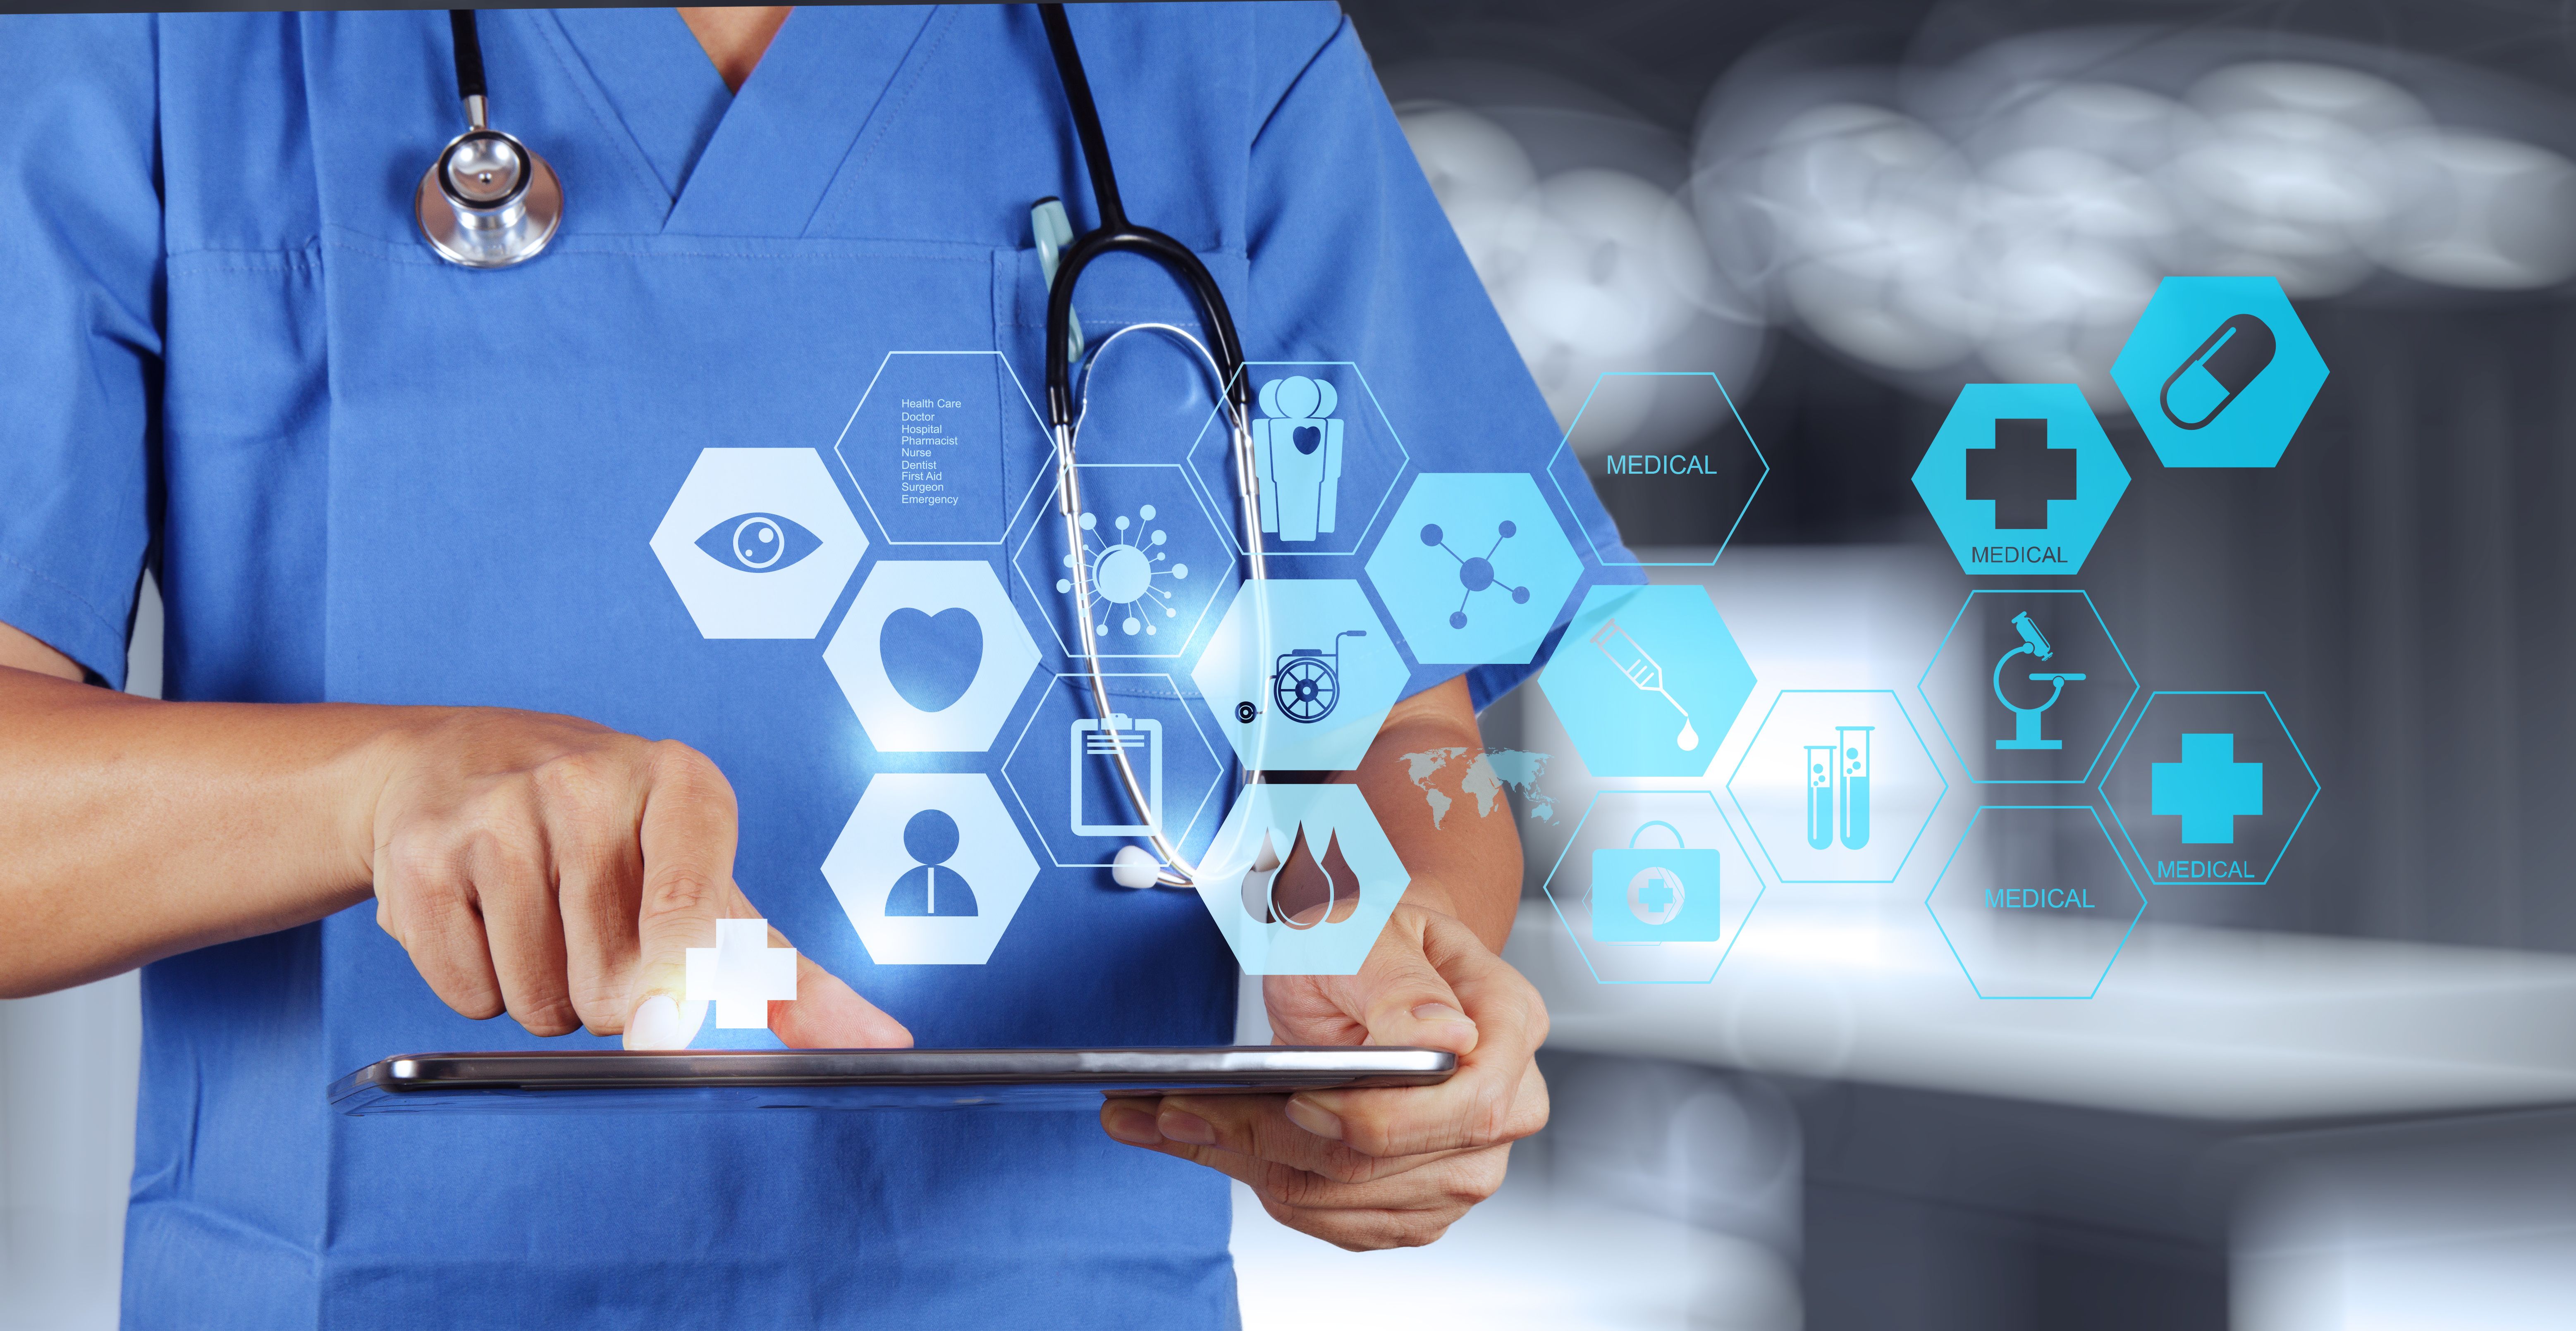 Цифровой госпиталь. Цифровые технологии в медицине. Информационные технологии в медицине. Цифровизация в медицине и здравоохранении. Инновационные технологии в здравоохранении.